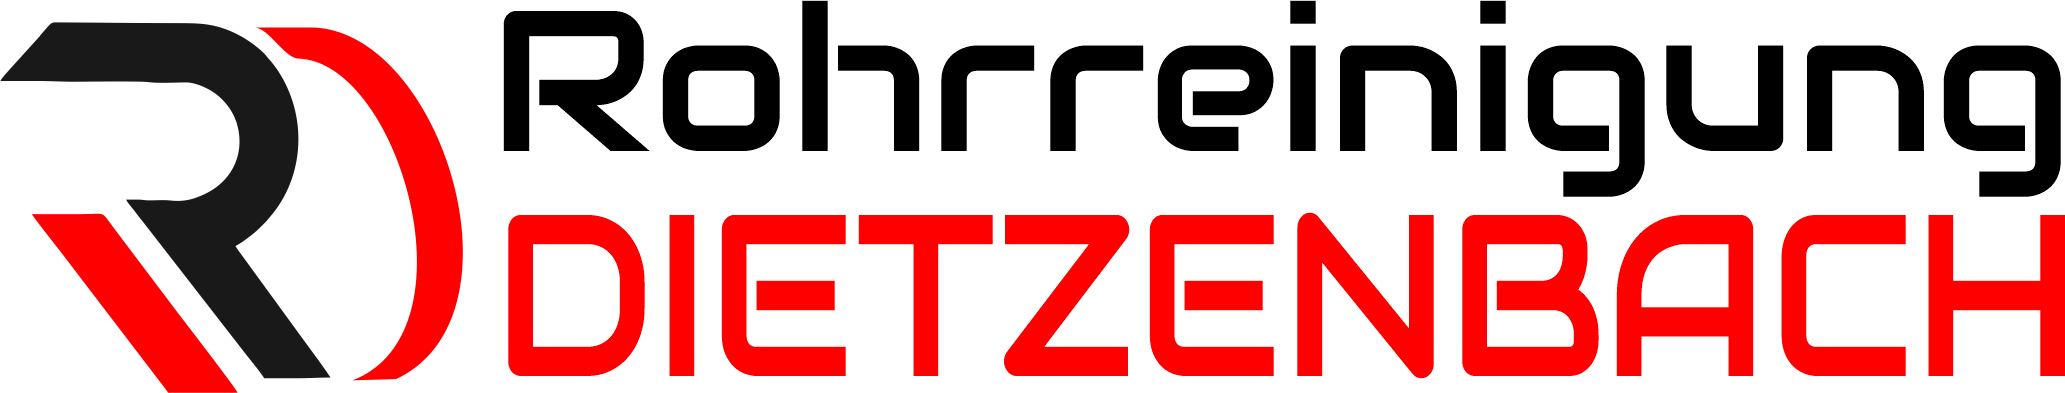 Rohrreinigung Dietzenbach Logo